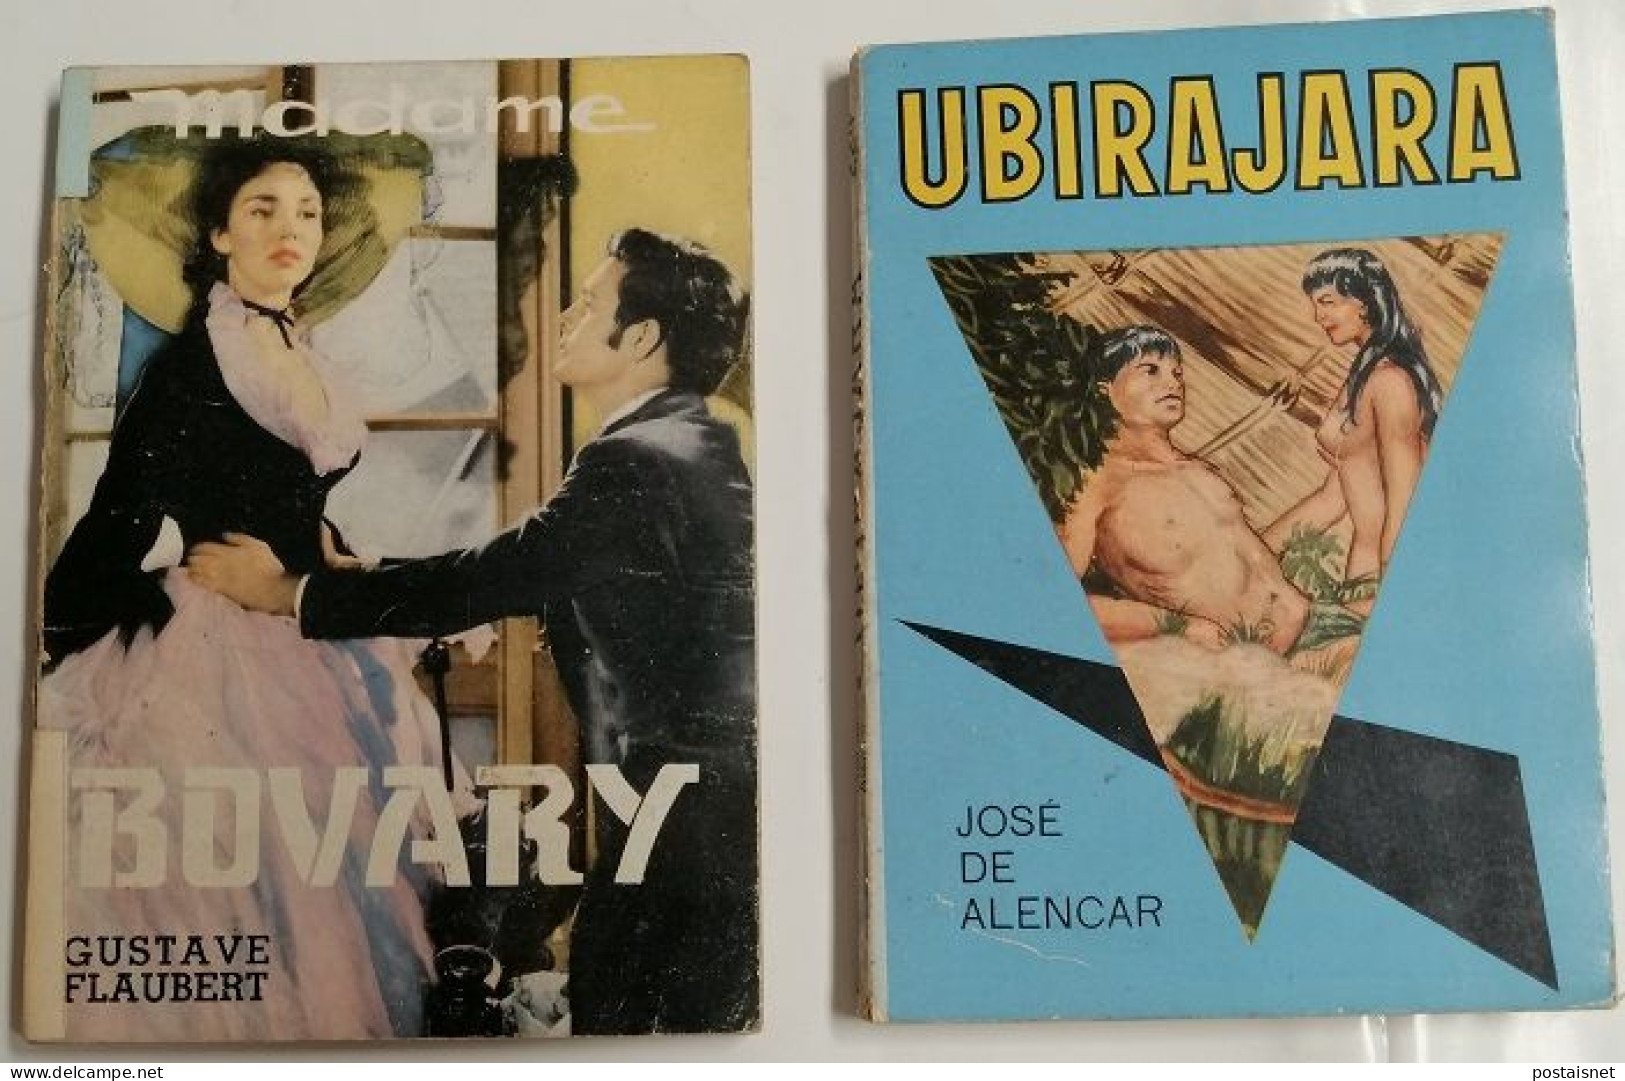 2 Livros Da Coleção “Os Melhores Livros E Revistas Do Brasil” - Romane